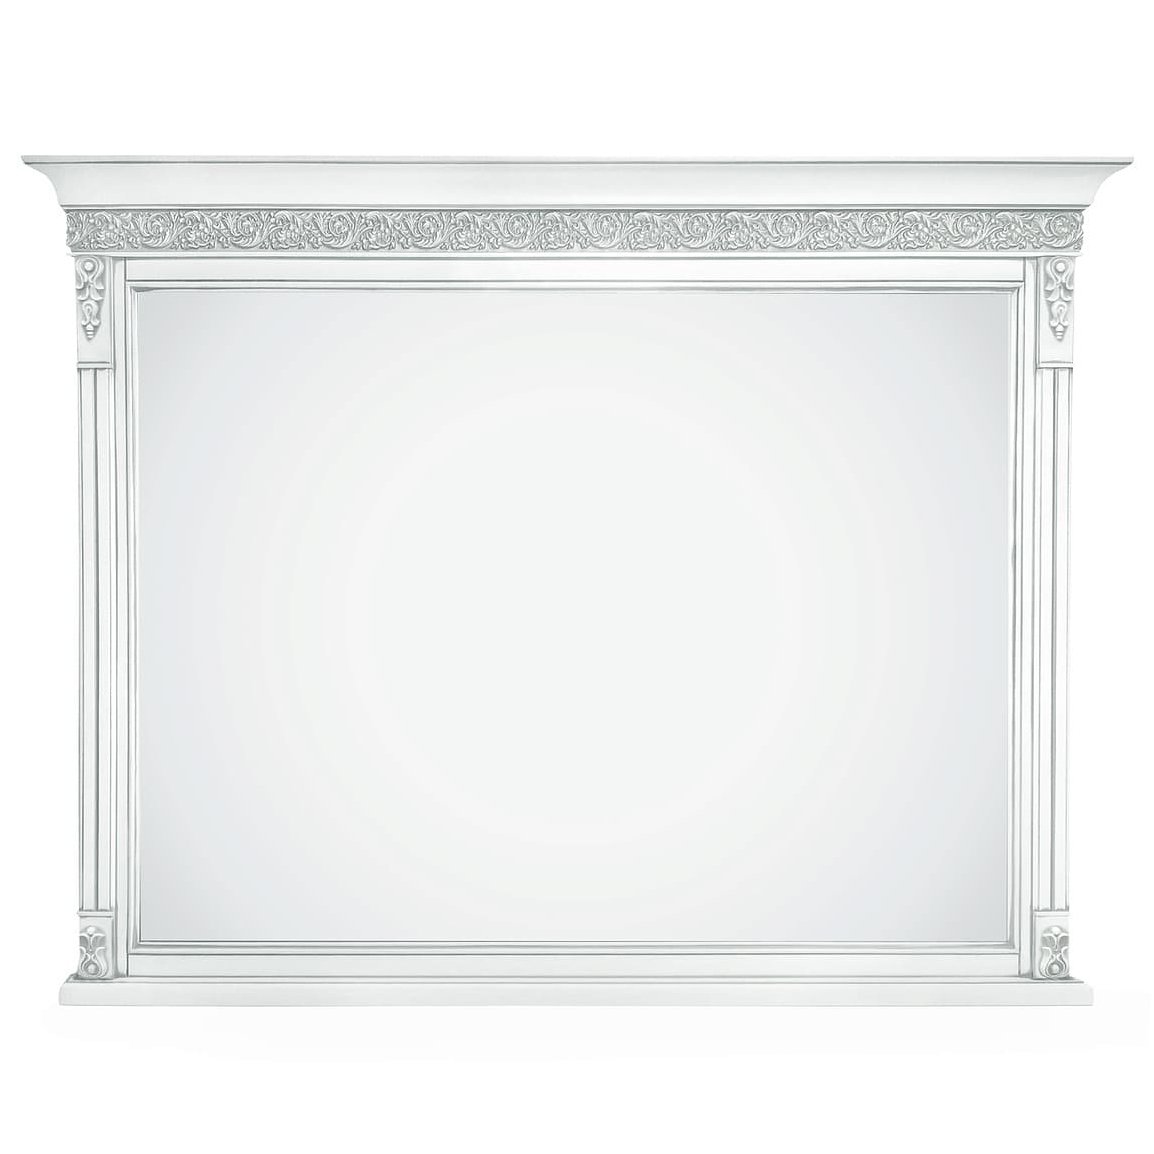 Зеркало Timber Неаполь Т-400, навесное цвет: белый с серебром (T-405)T-405